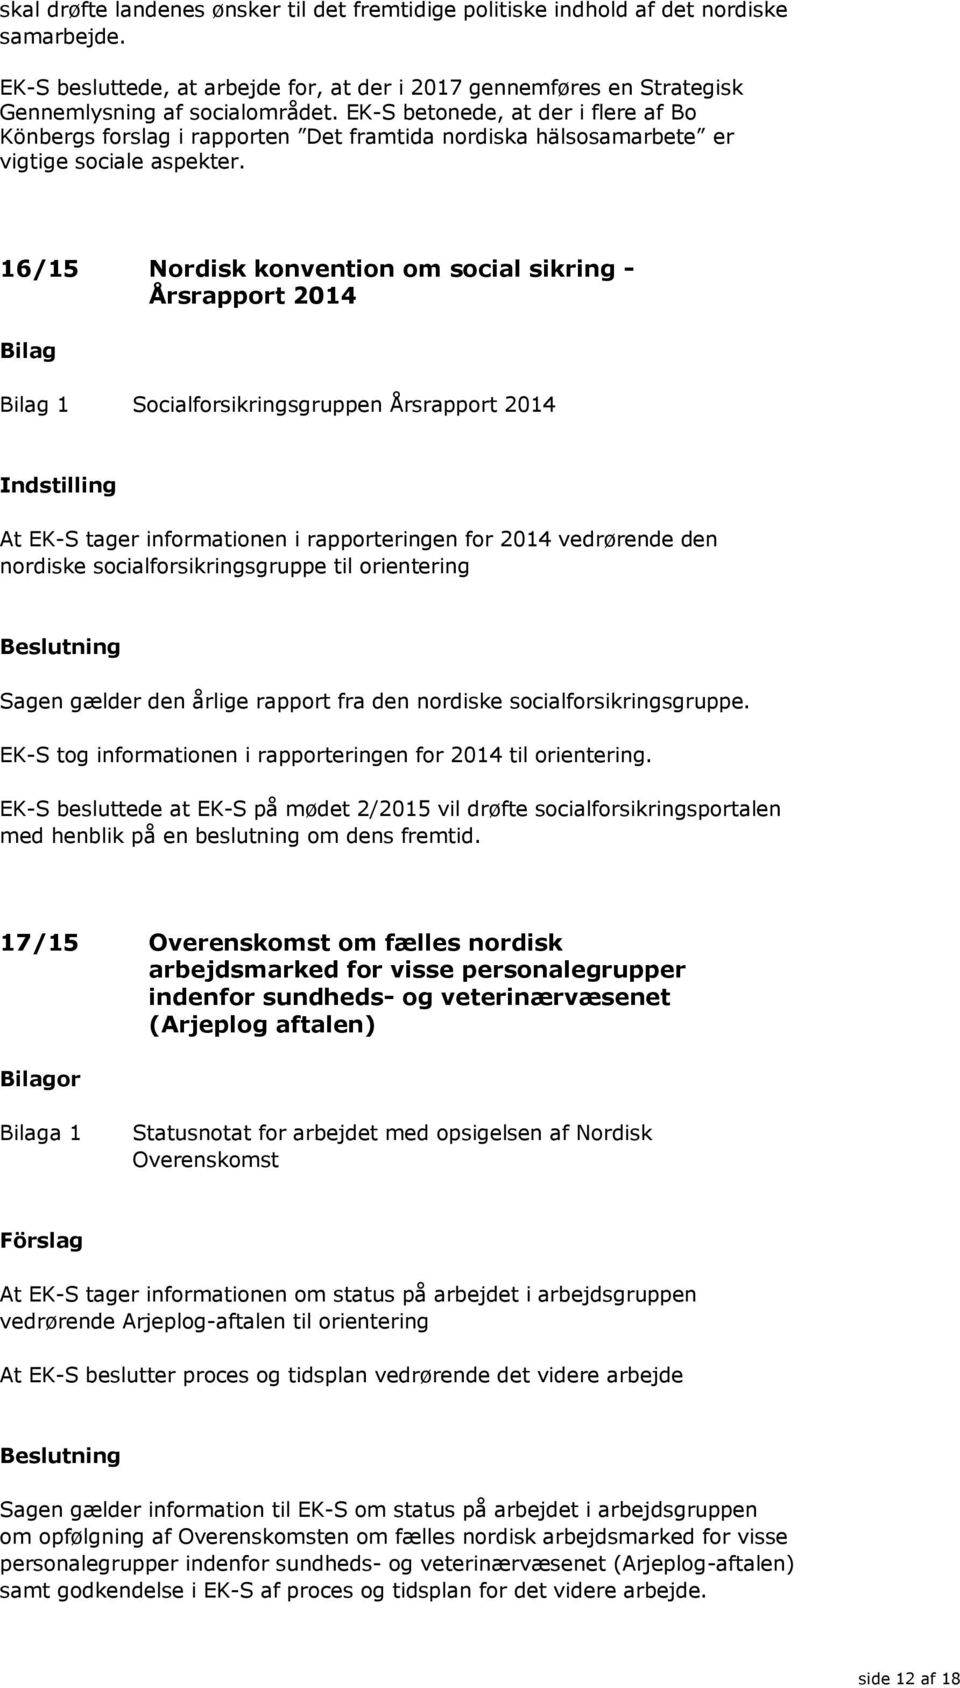 16/15 Nordisk konvention om social sikring - Årsrapport 2014 1 Socialforsikringsgruppen Årsrapport 2014 At EK-S tager informationen i rapporteringen for 2014 vedrørende den nordiske